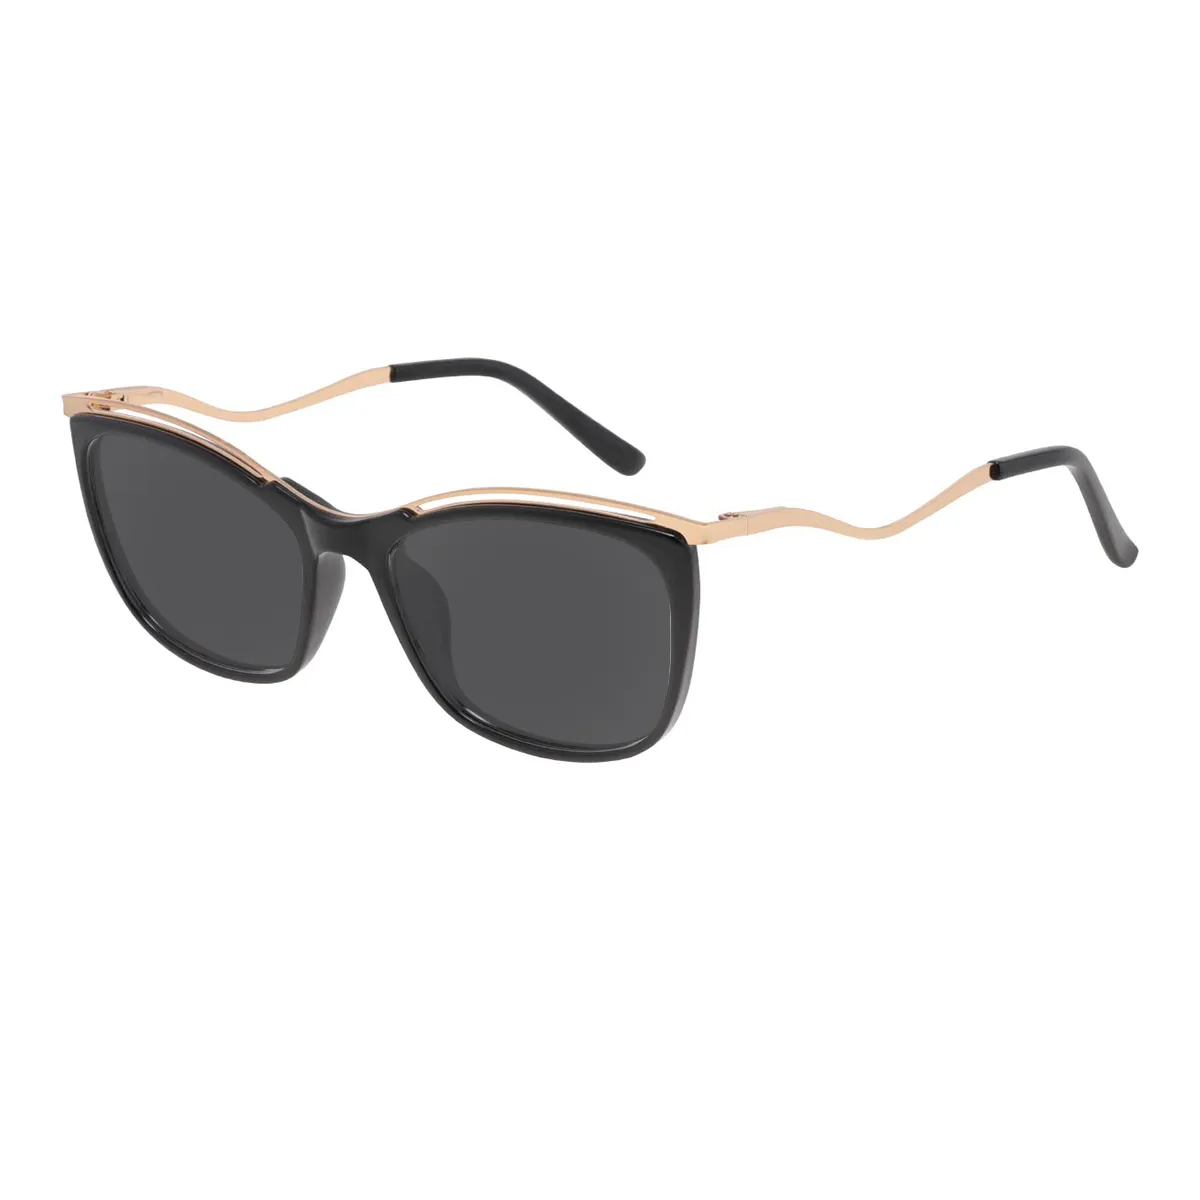 Ainslie - Rectangle Black Sunglasses for Women